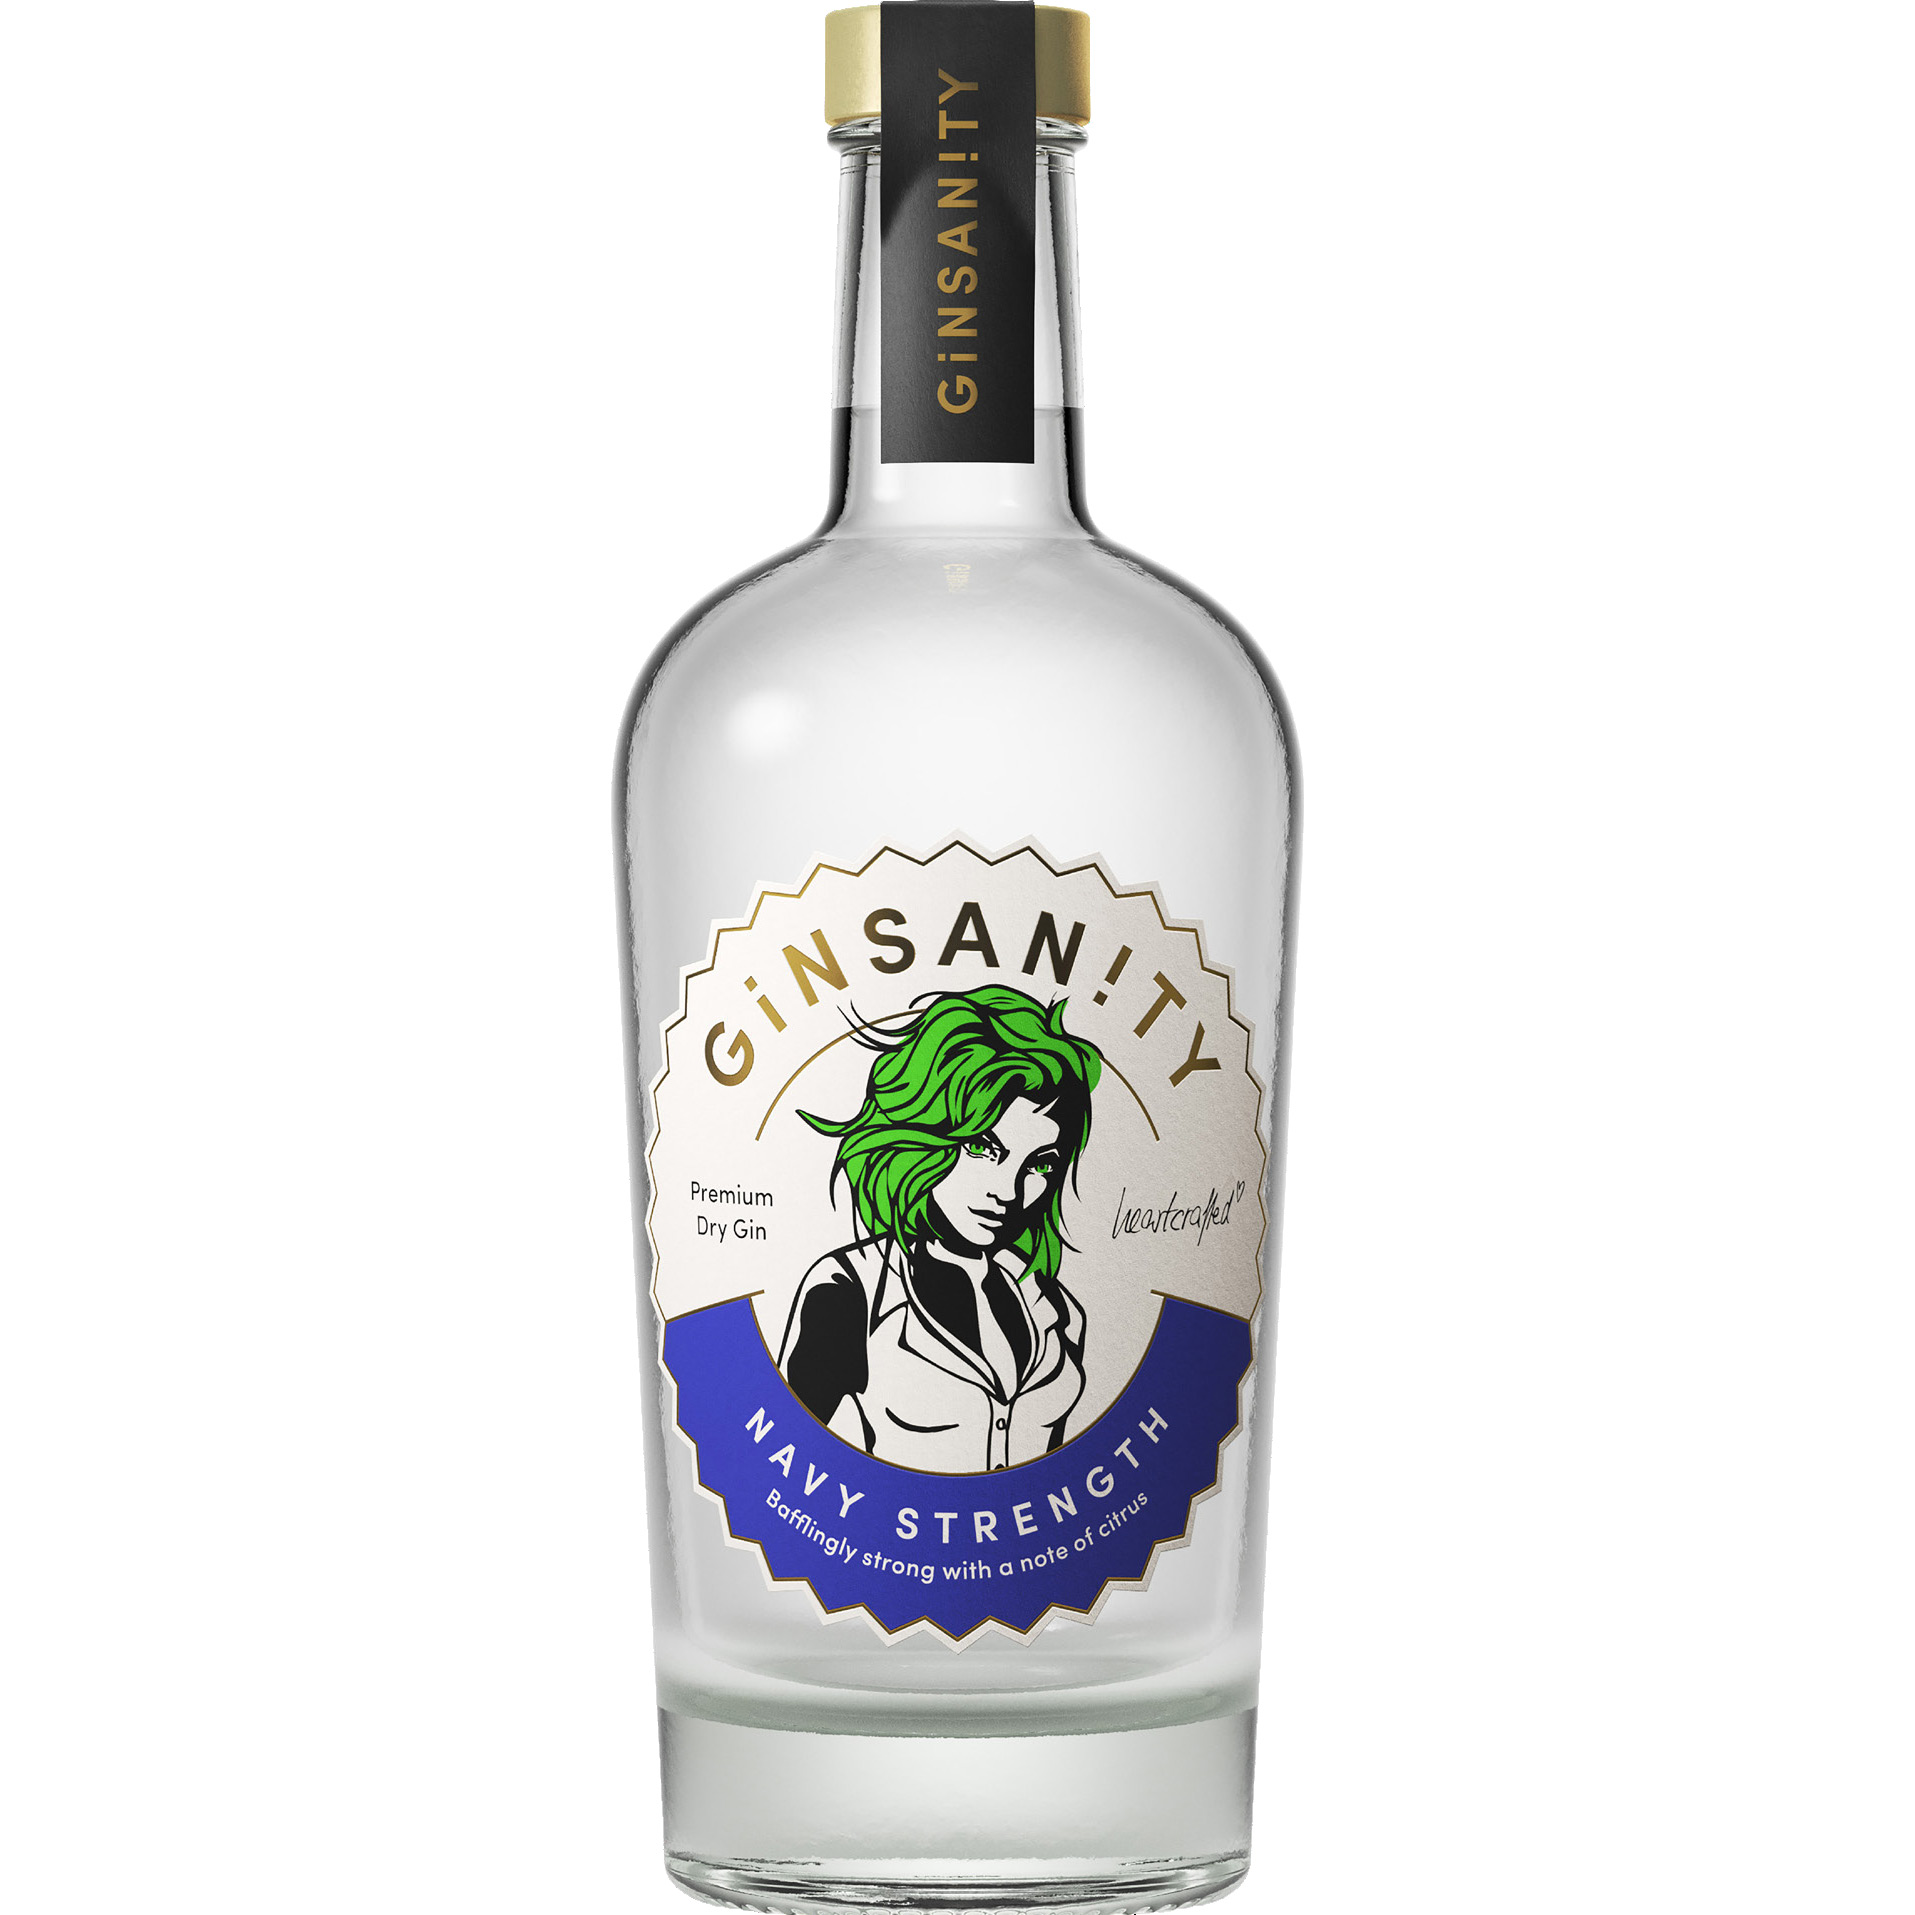 Brug Ginsanity Premium Dry Gin Navy Strength til en forbedret oplevelse